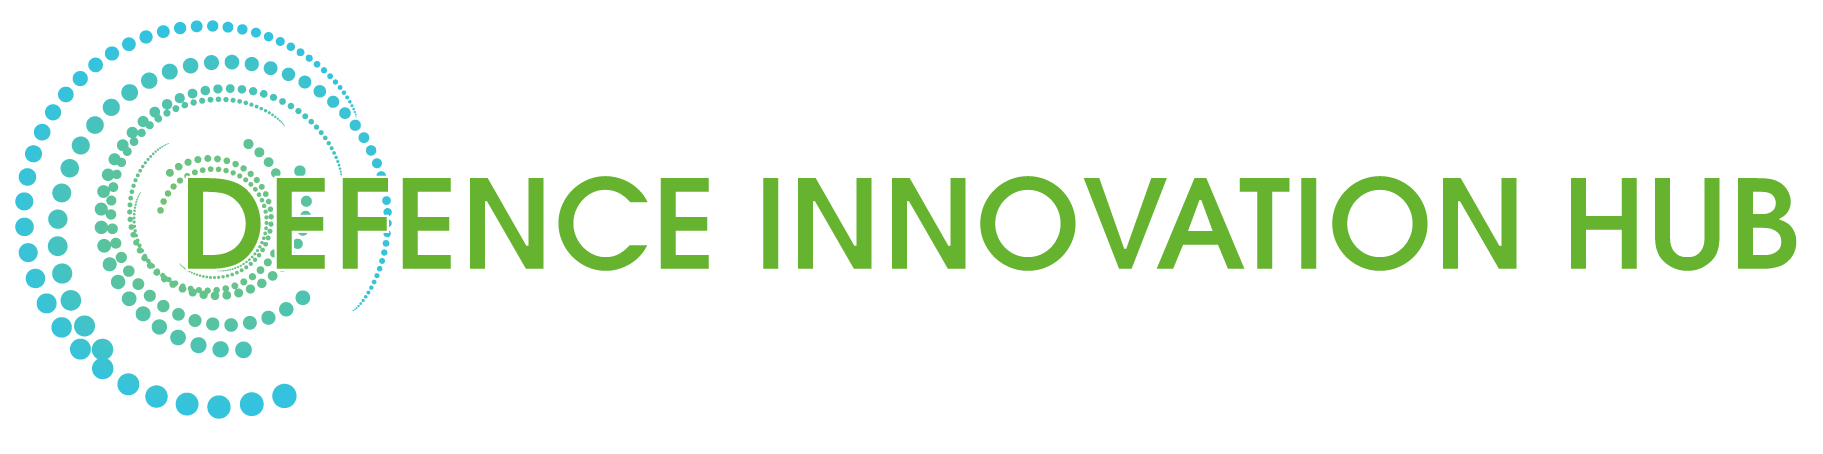 Defence innovation hub logo